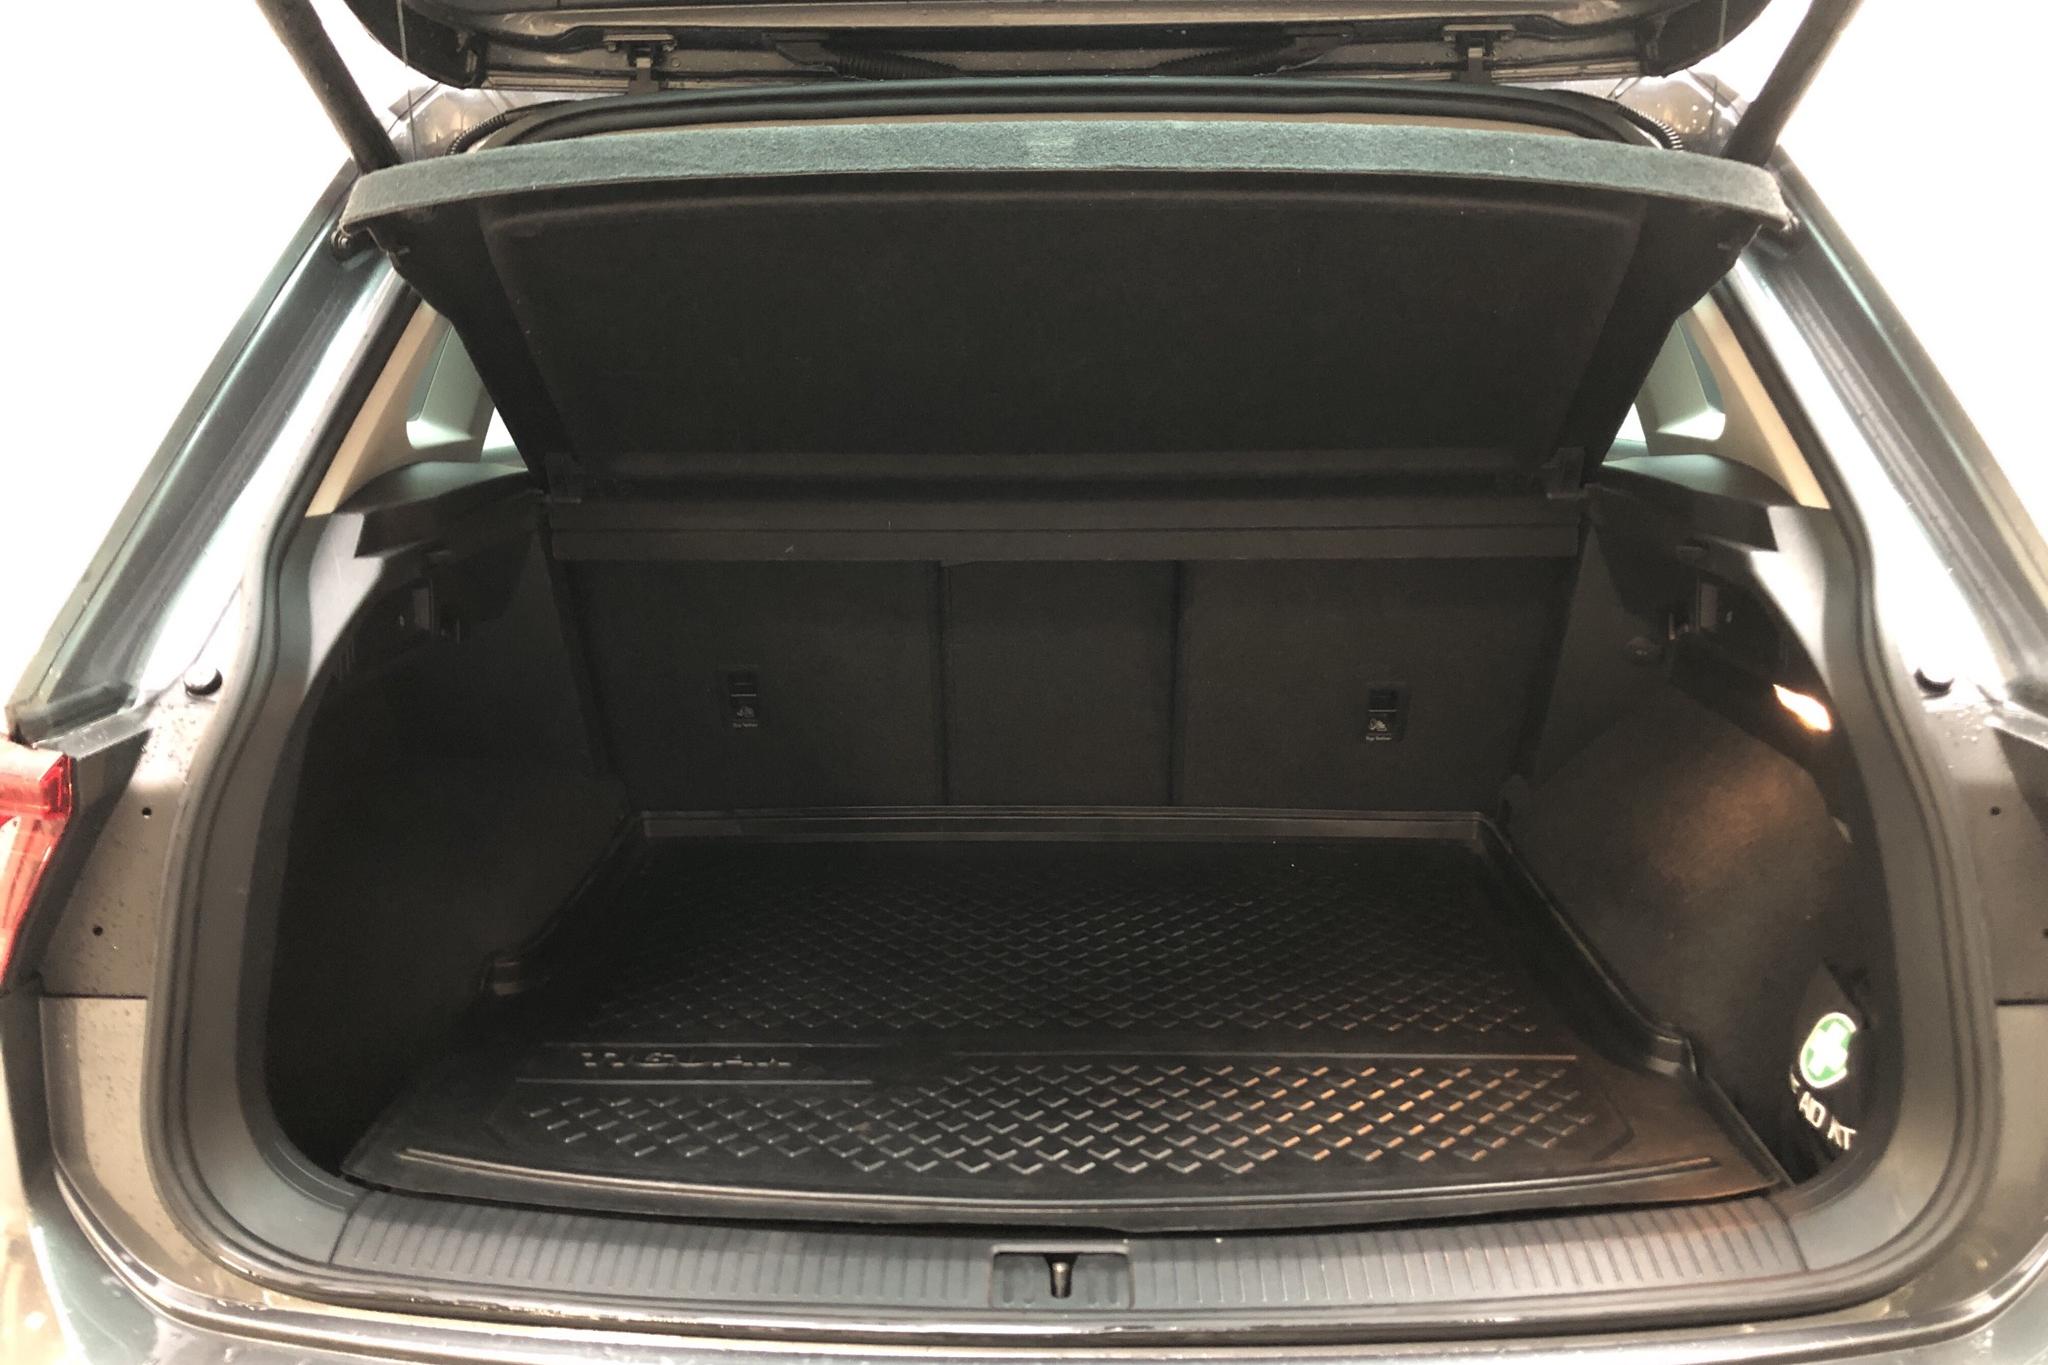 VW Tiguan 2.0 TDI 4MOTION (190hk) - 103 490 km - Automatic - silver - 2017